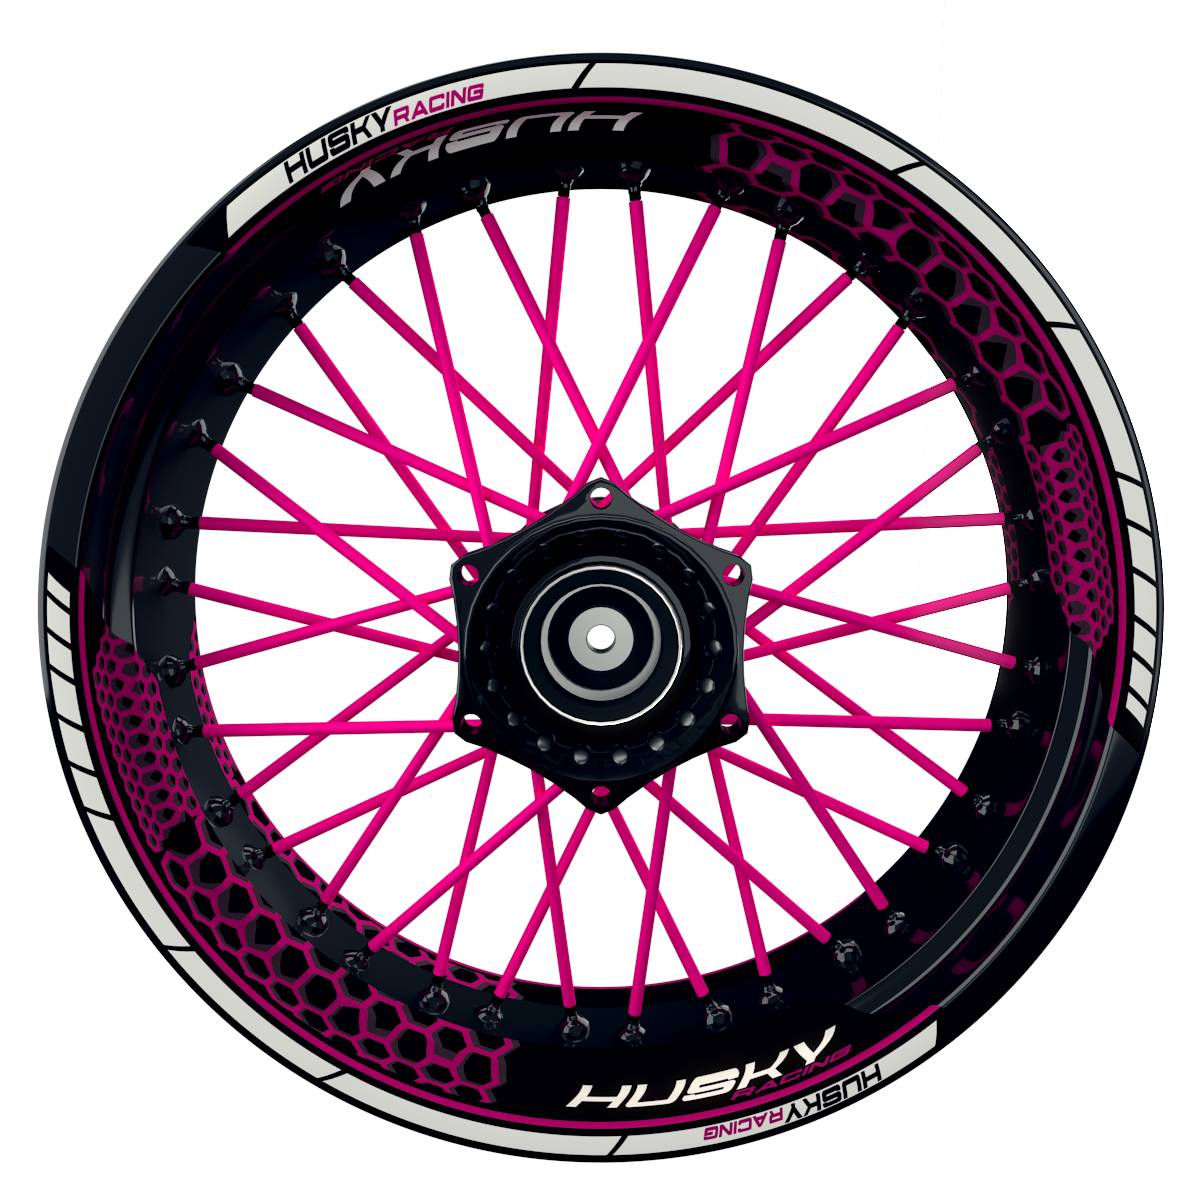 HUSKY Racing Hexagon schwarz pink Frontansicht